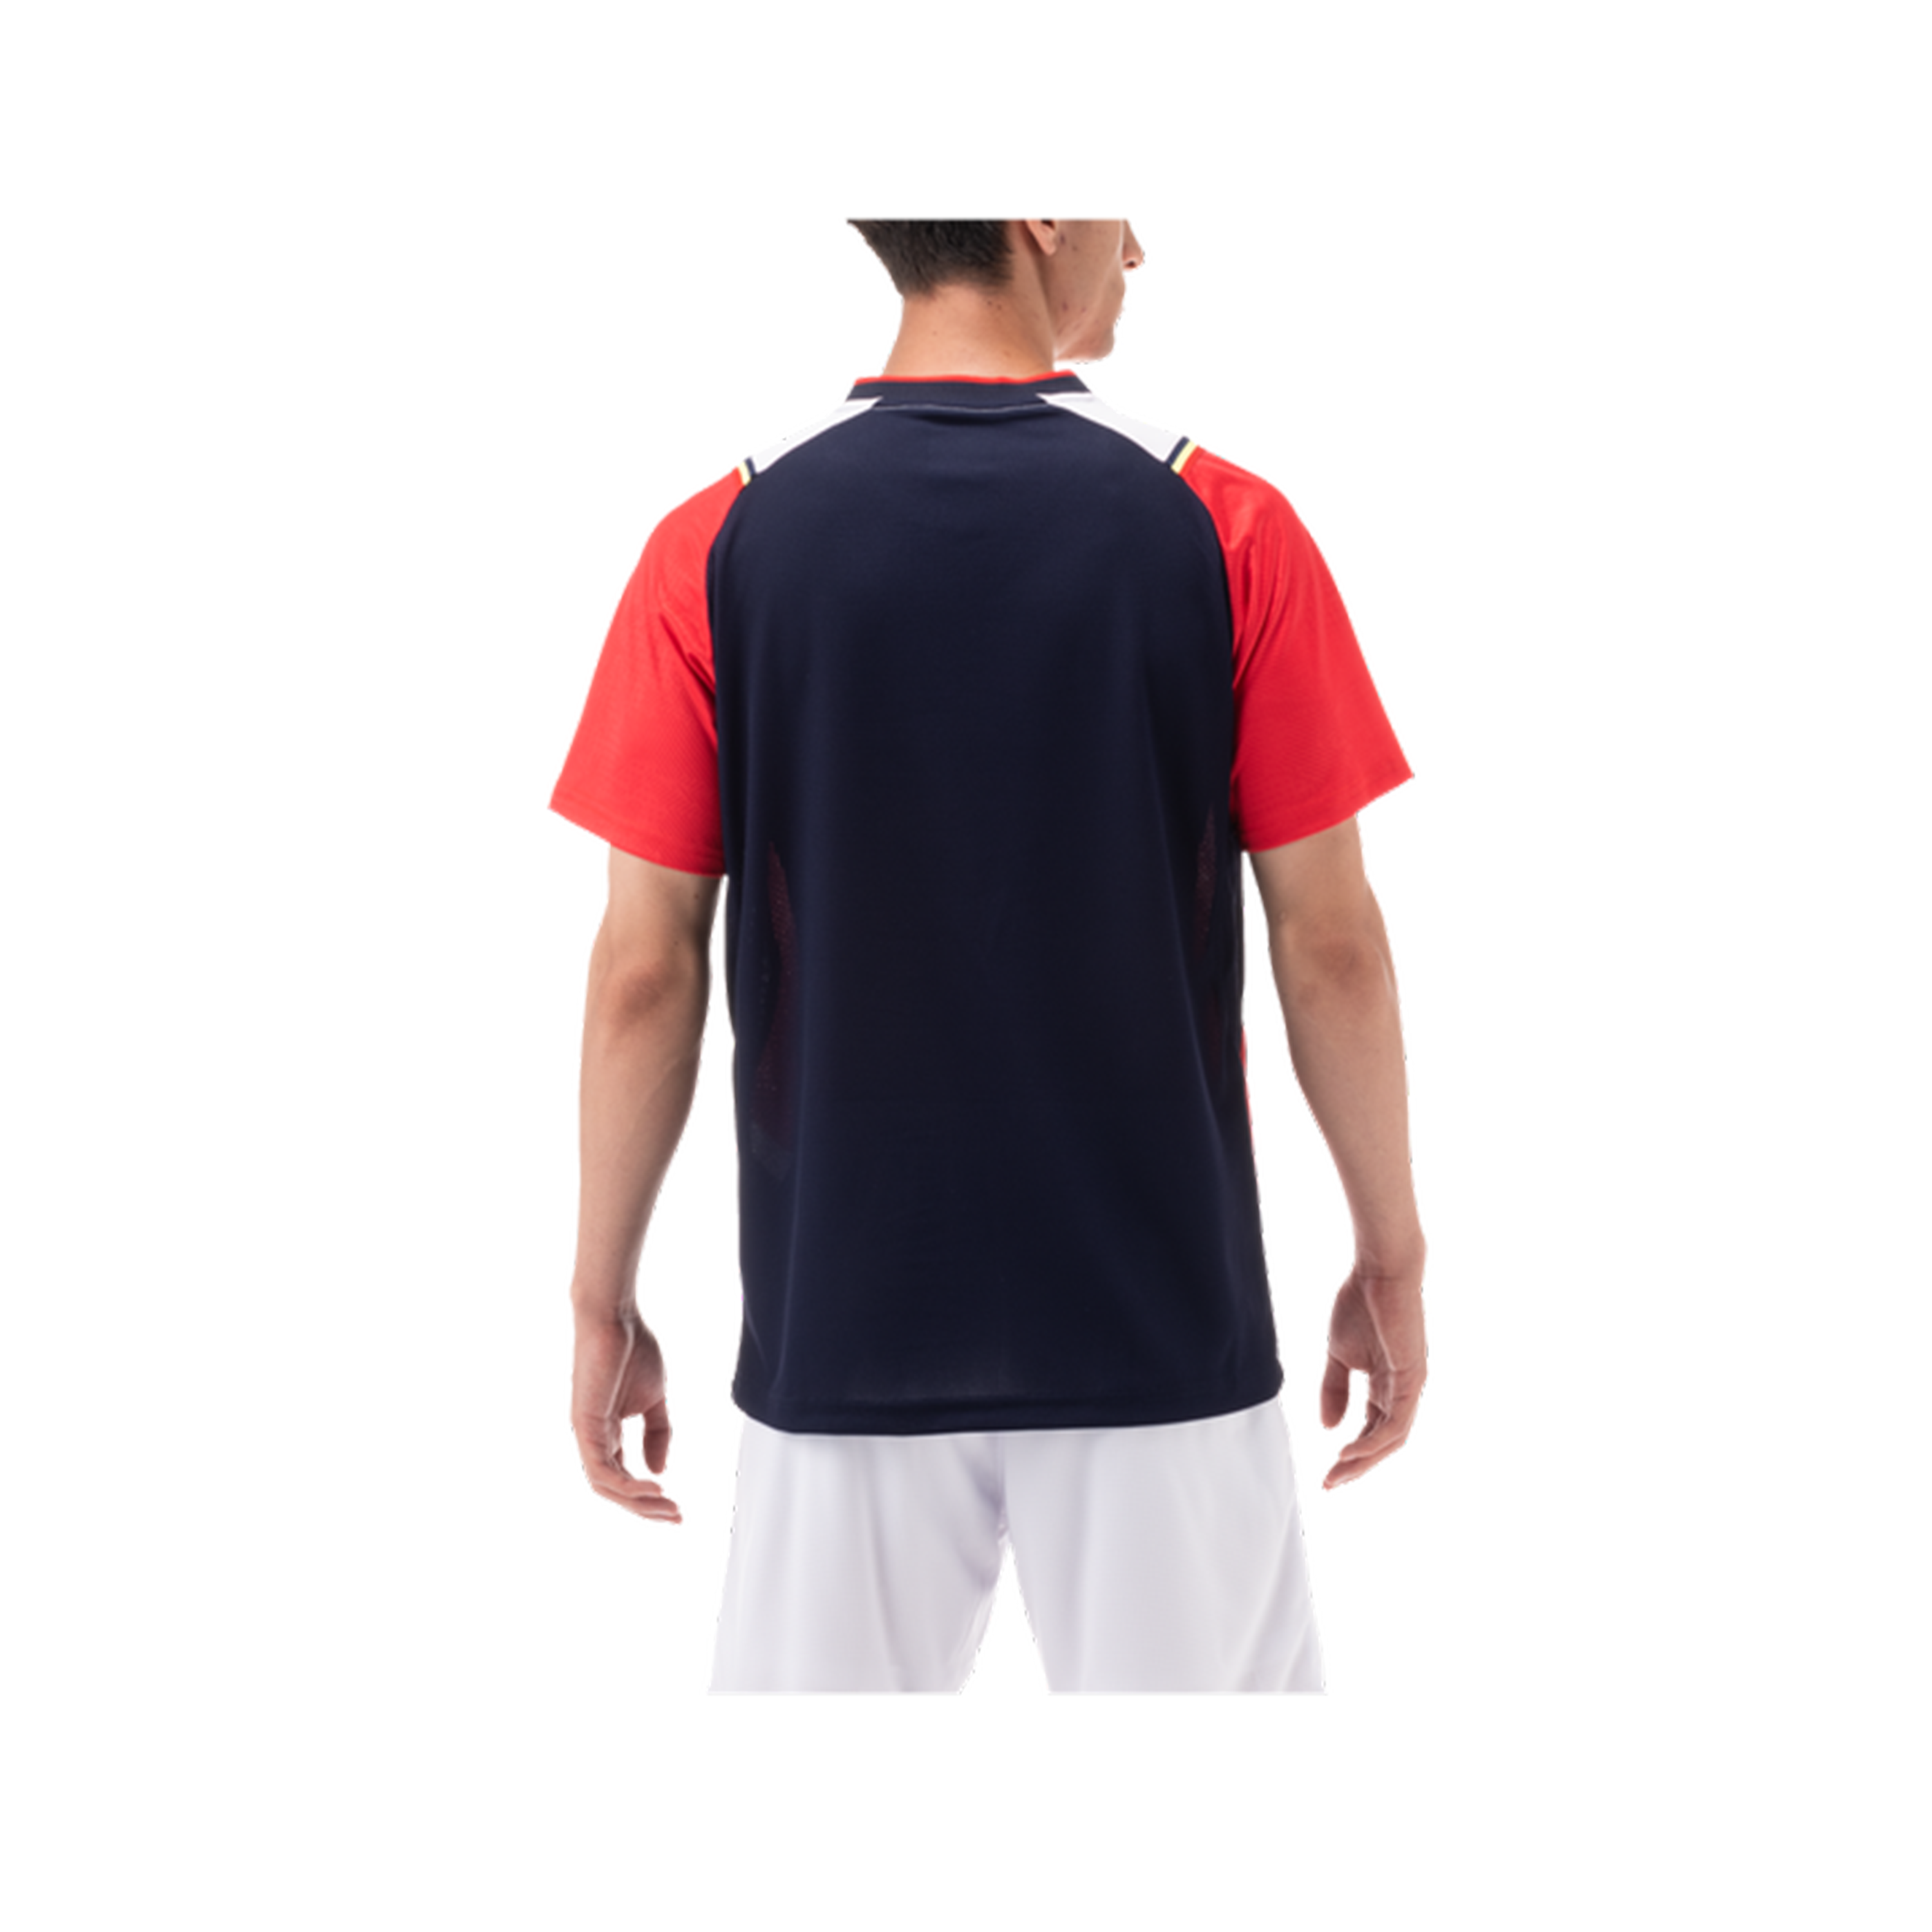 Yonex Premium Badminton/ Sports Shirt 10489 RubyRed MEN'S